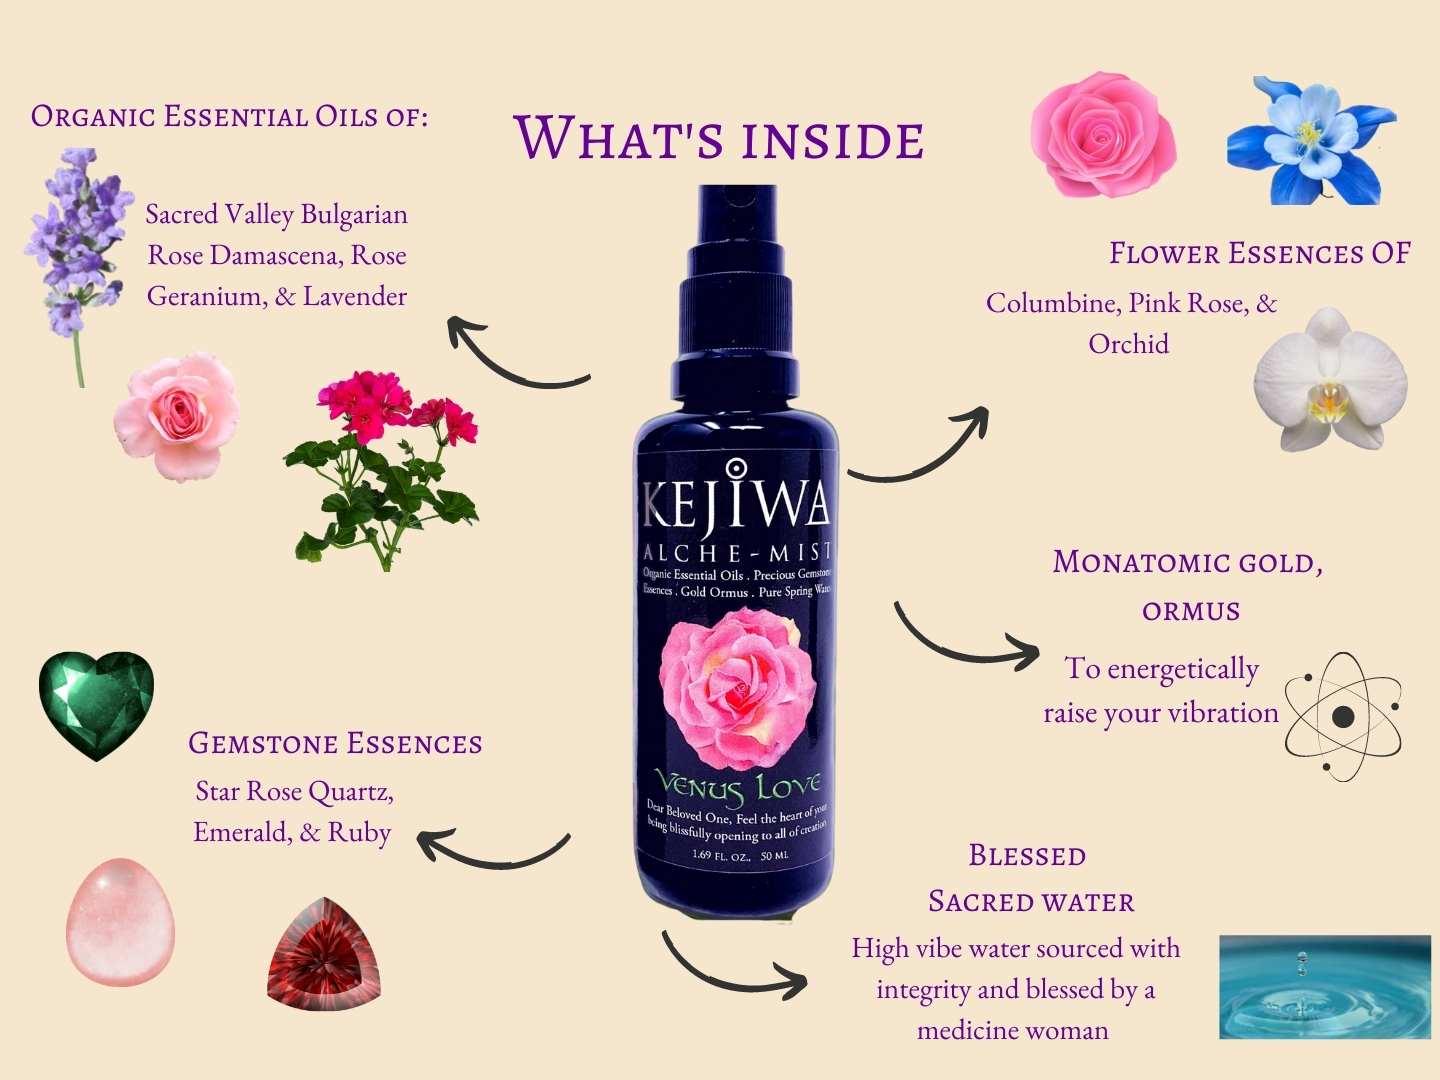 Venus Love Alche-Mist Rose Aromatherapy Spray Ingredients